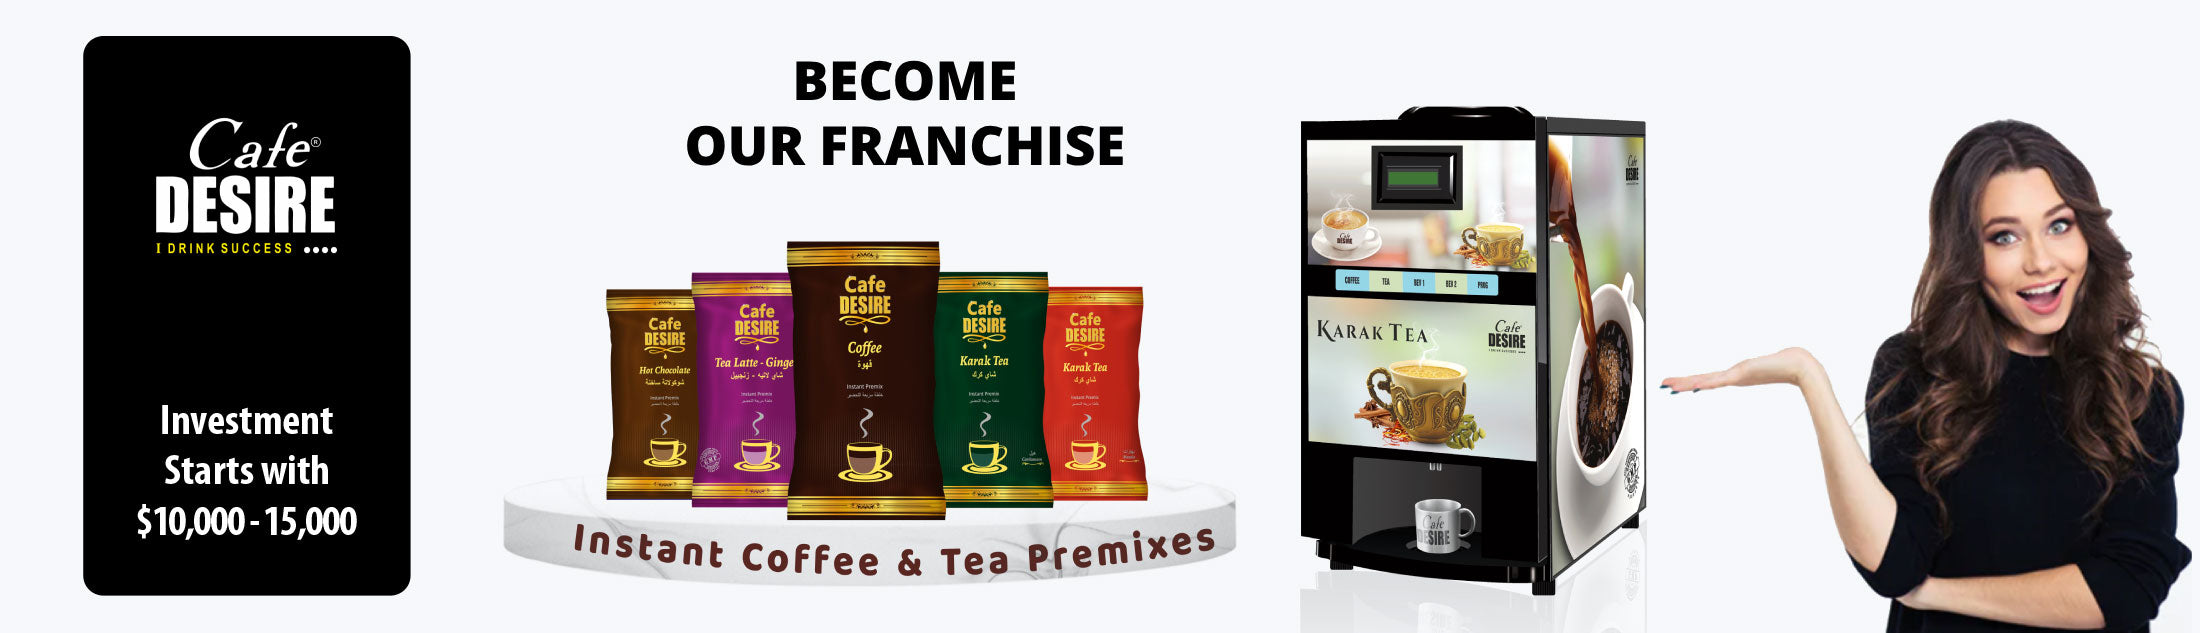 Dailycoffee banner website